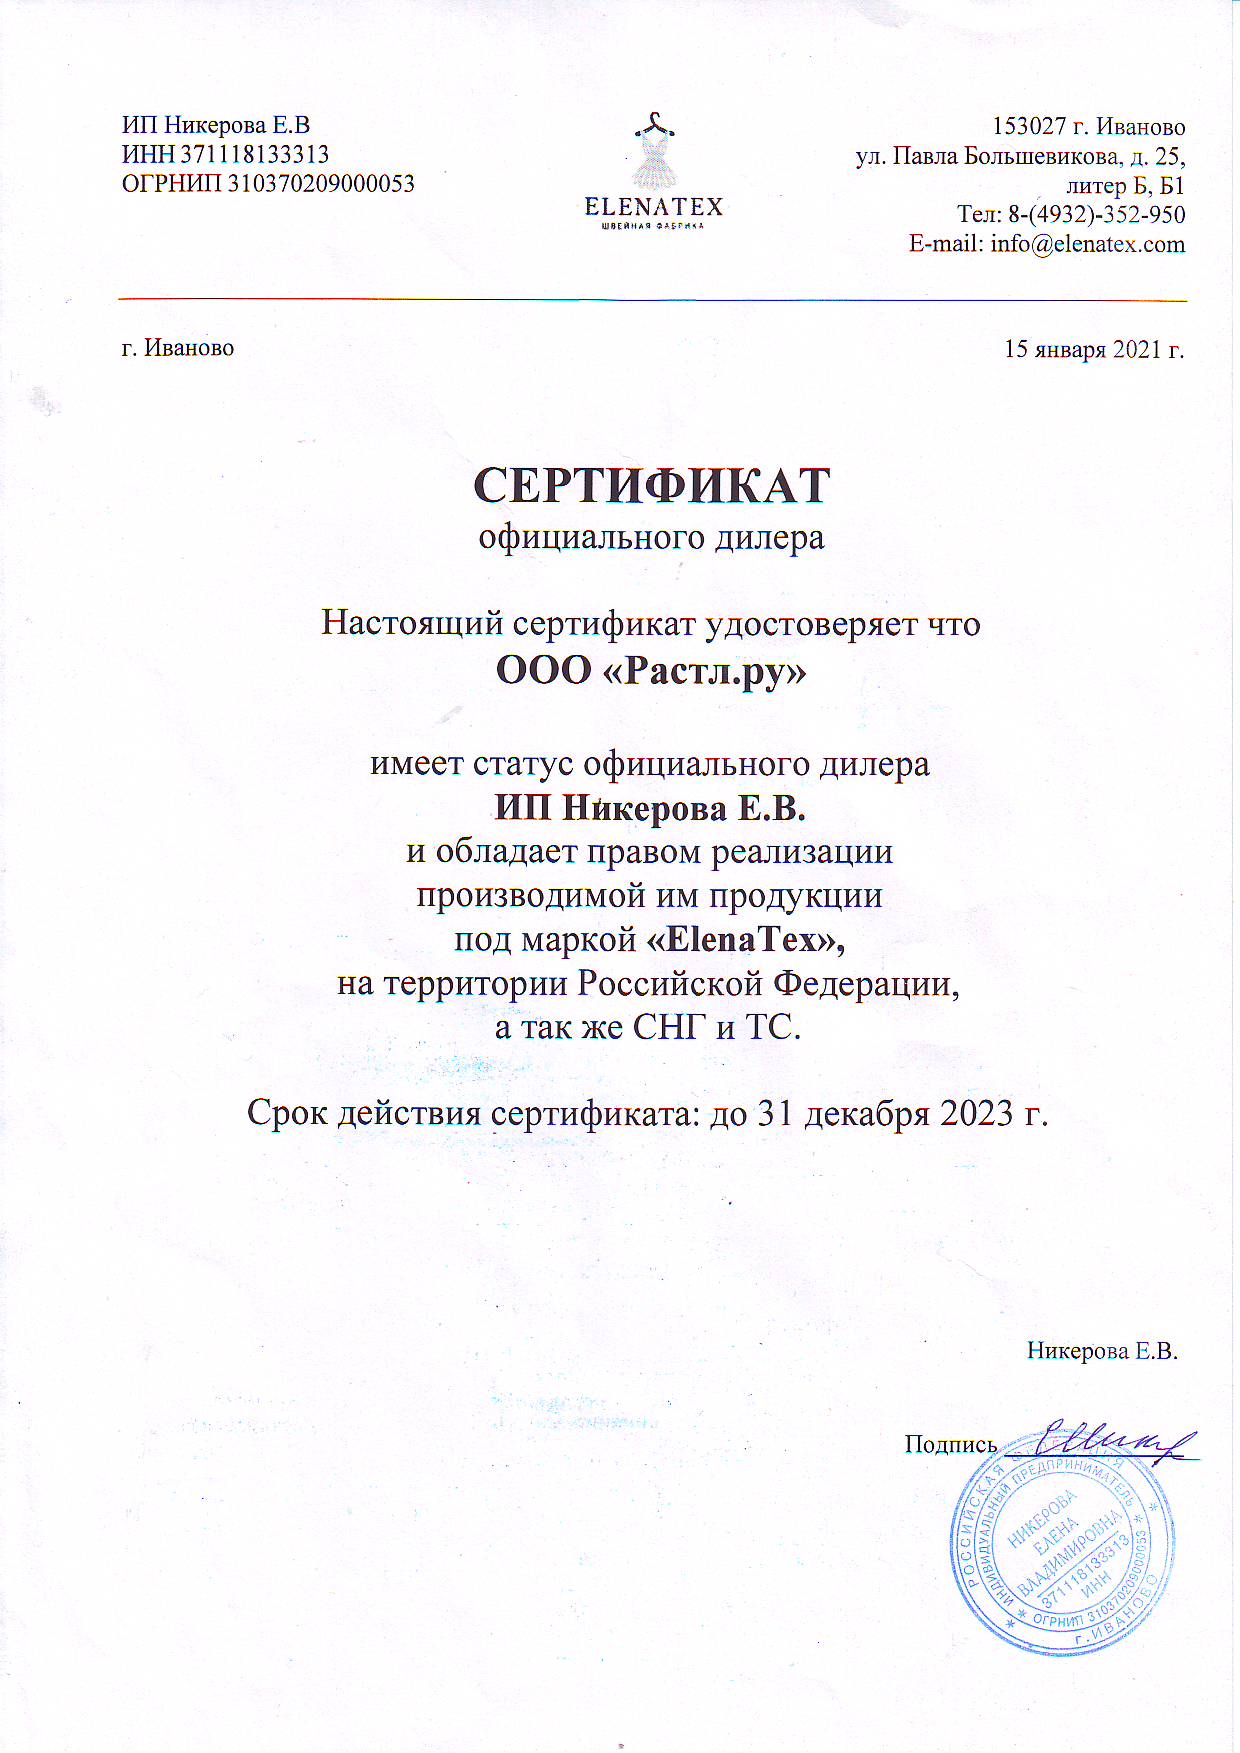 Дилерский сертификат ЕленаТекс